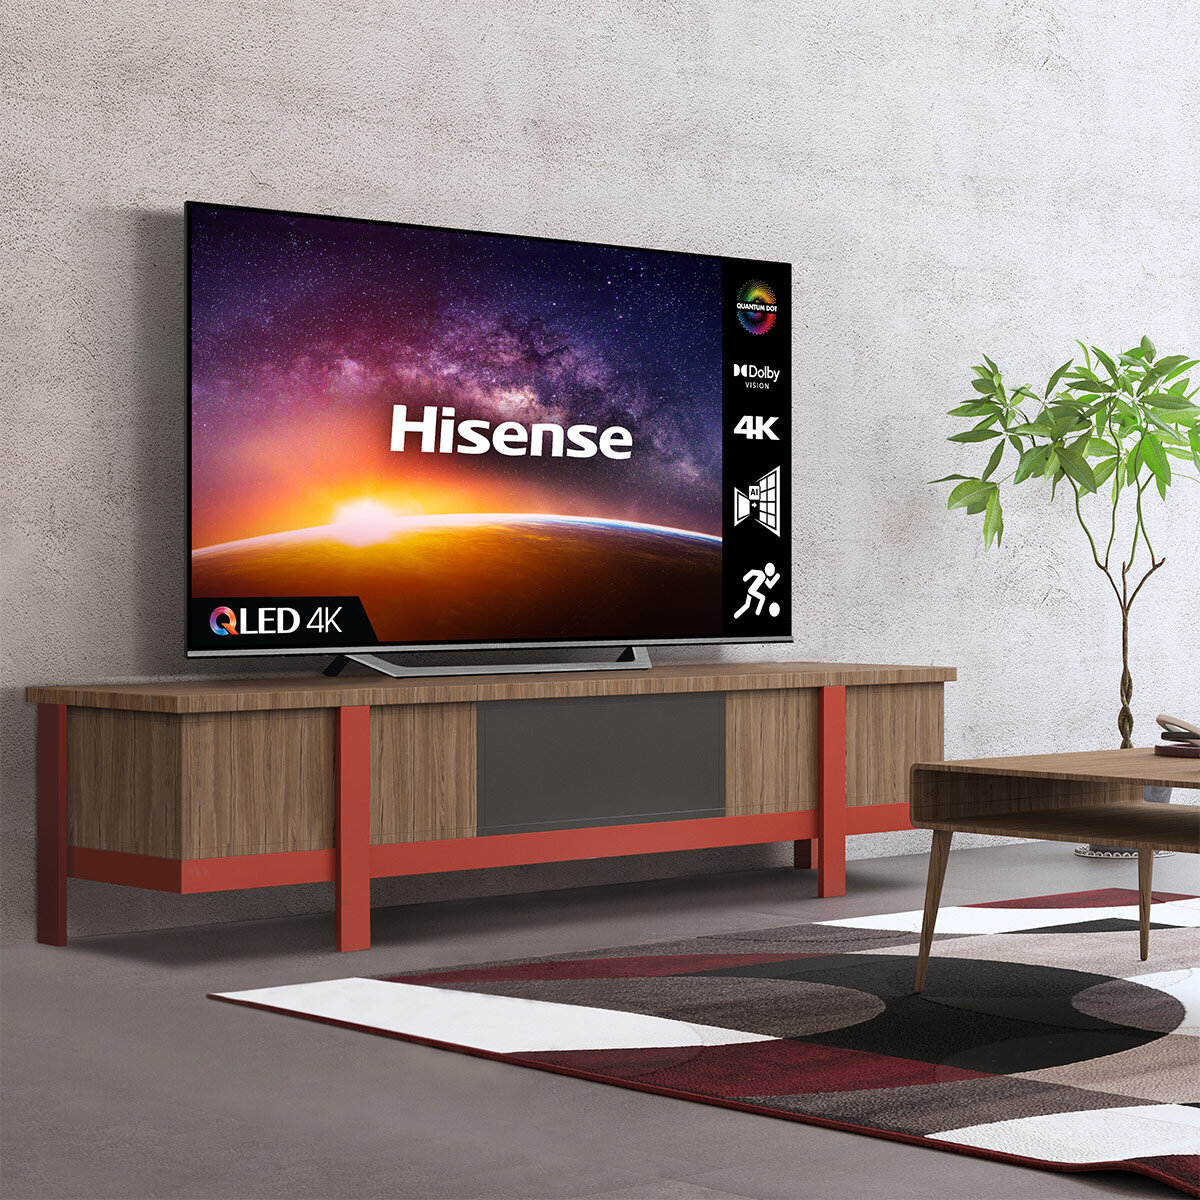 Buy Hisense 43A7GQTUK 43 Inch 4K Ultra HD QLED Smart TV at Costco.co.uk